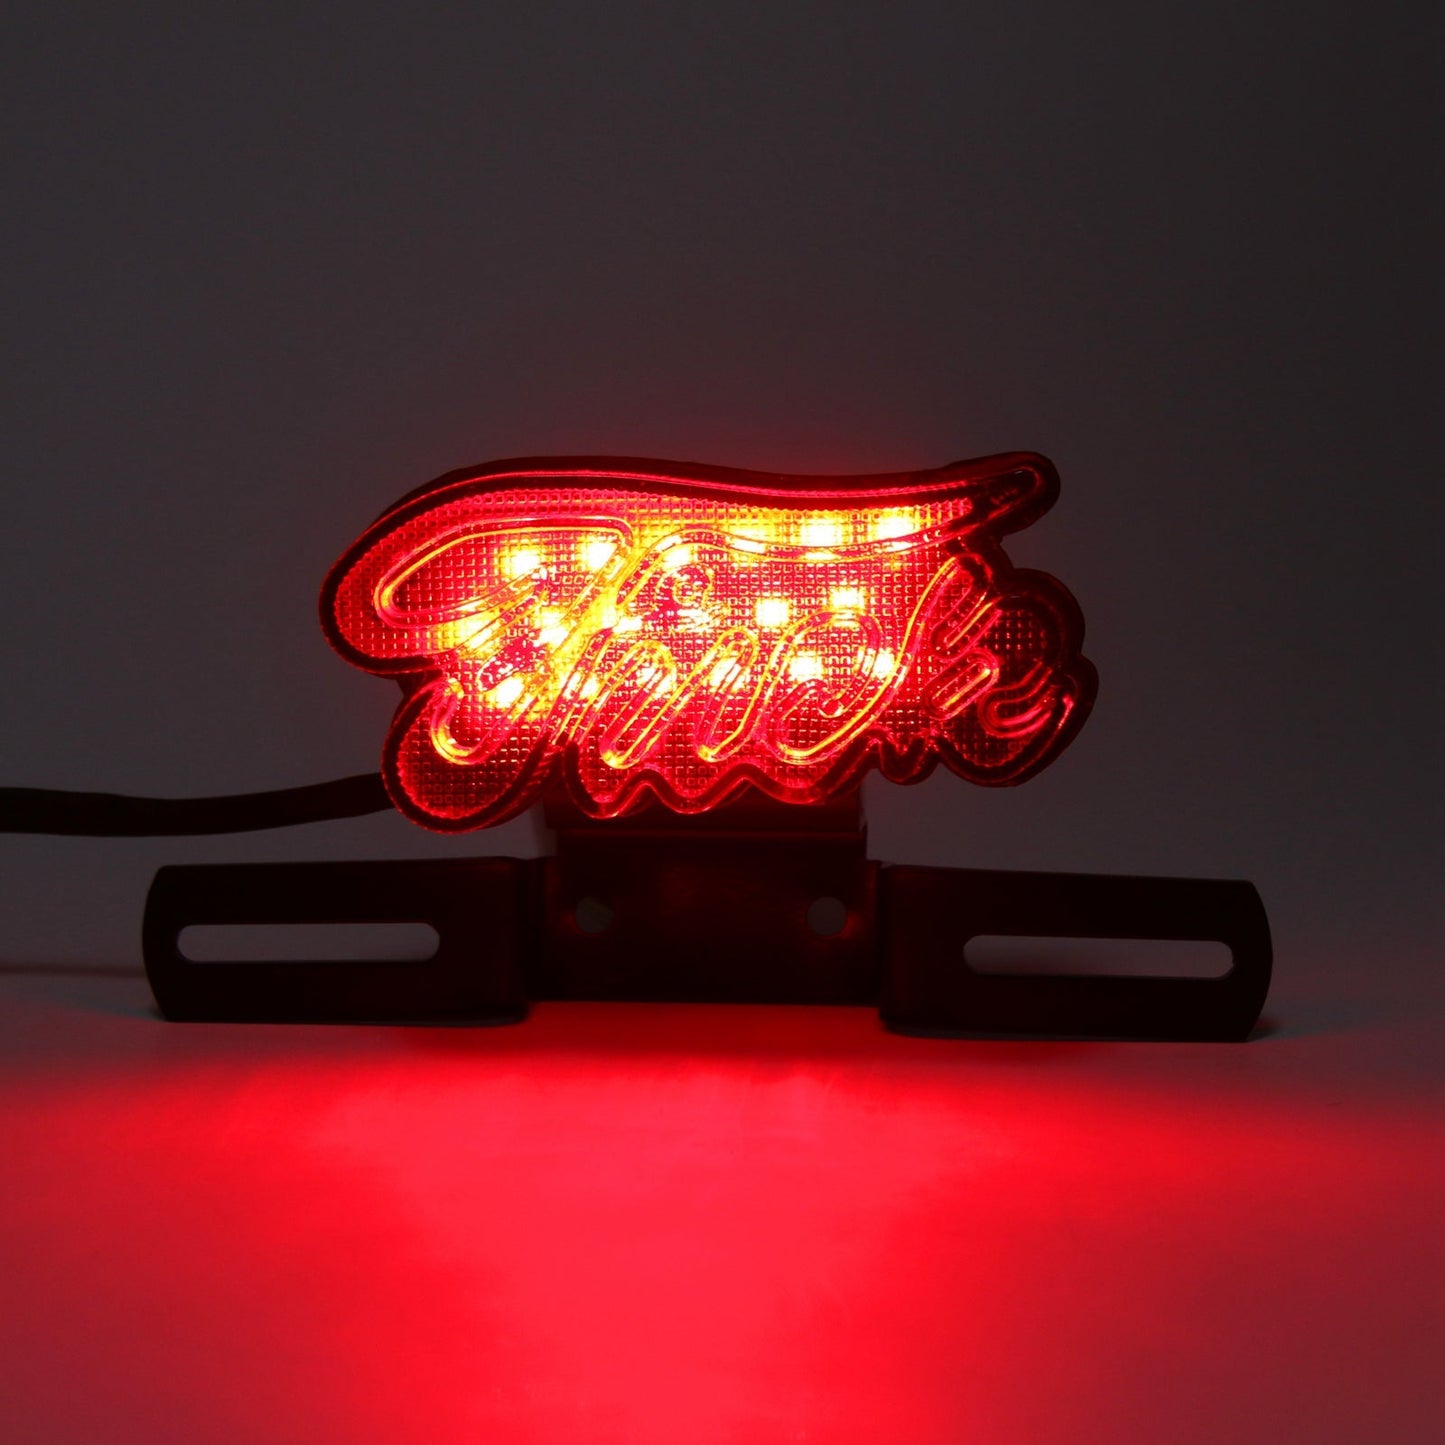 Le migliori offerte per LED Brake Tail Light Running Lamp Custodia in plastica per Harley Chopper Generico sono su ✓ Confronta prezzi e caratteristiche di prodotti nuovi e usati ✓ Molti articoli con consegna gratis!